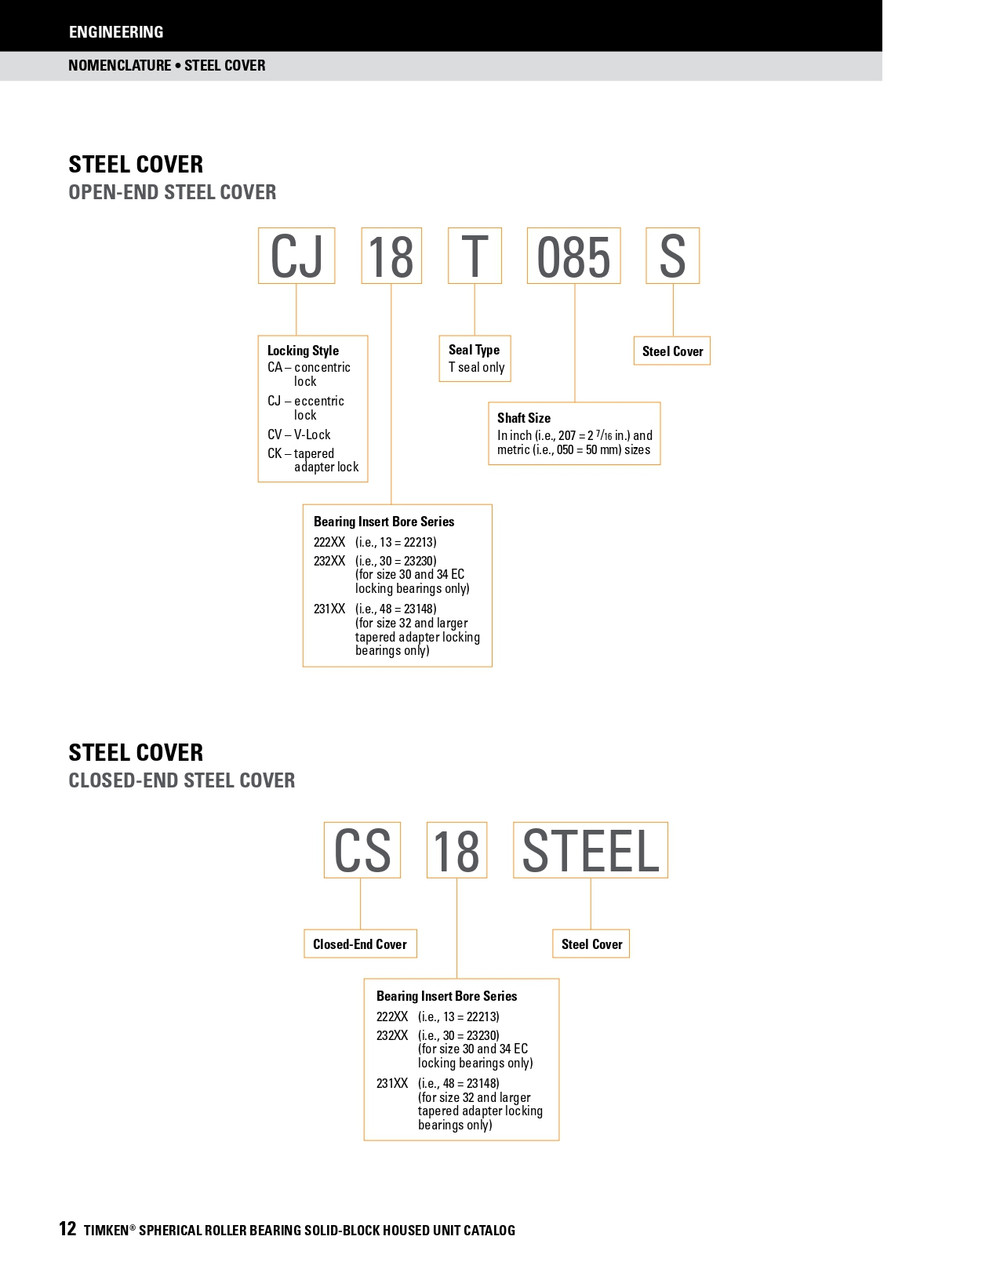 4-7/16" Timken SRB Steel Open End Cover w/Teflon Seal - TA/DV Taper Lock Bushing Type  CK26T407S